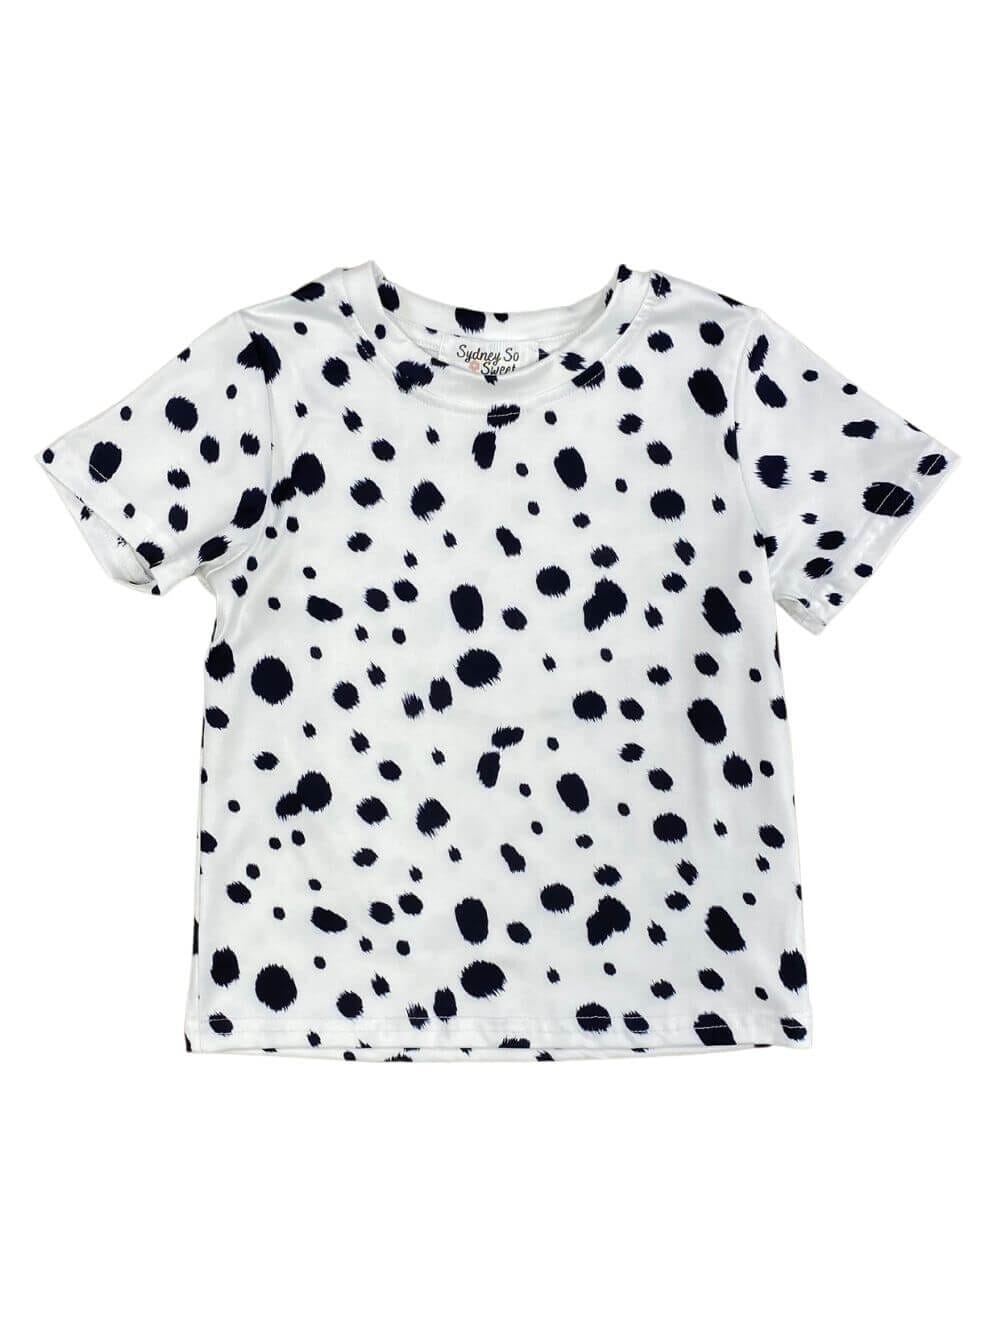 Polka Dot T-Shirt - Black/White